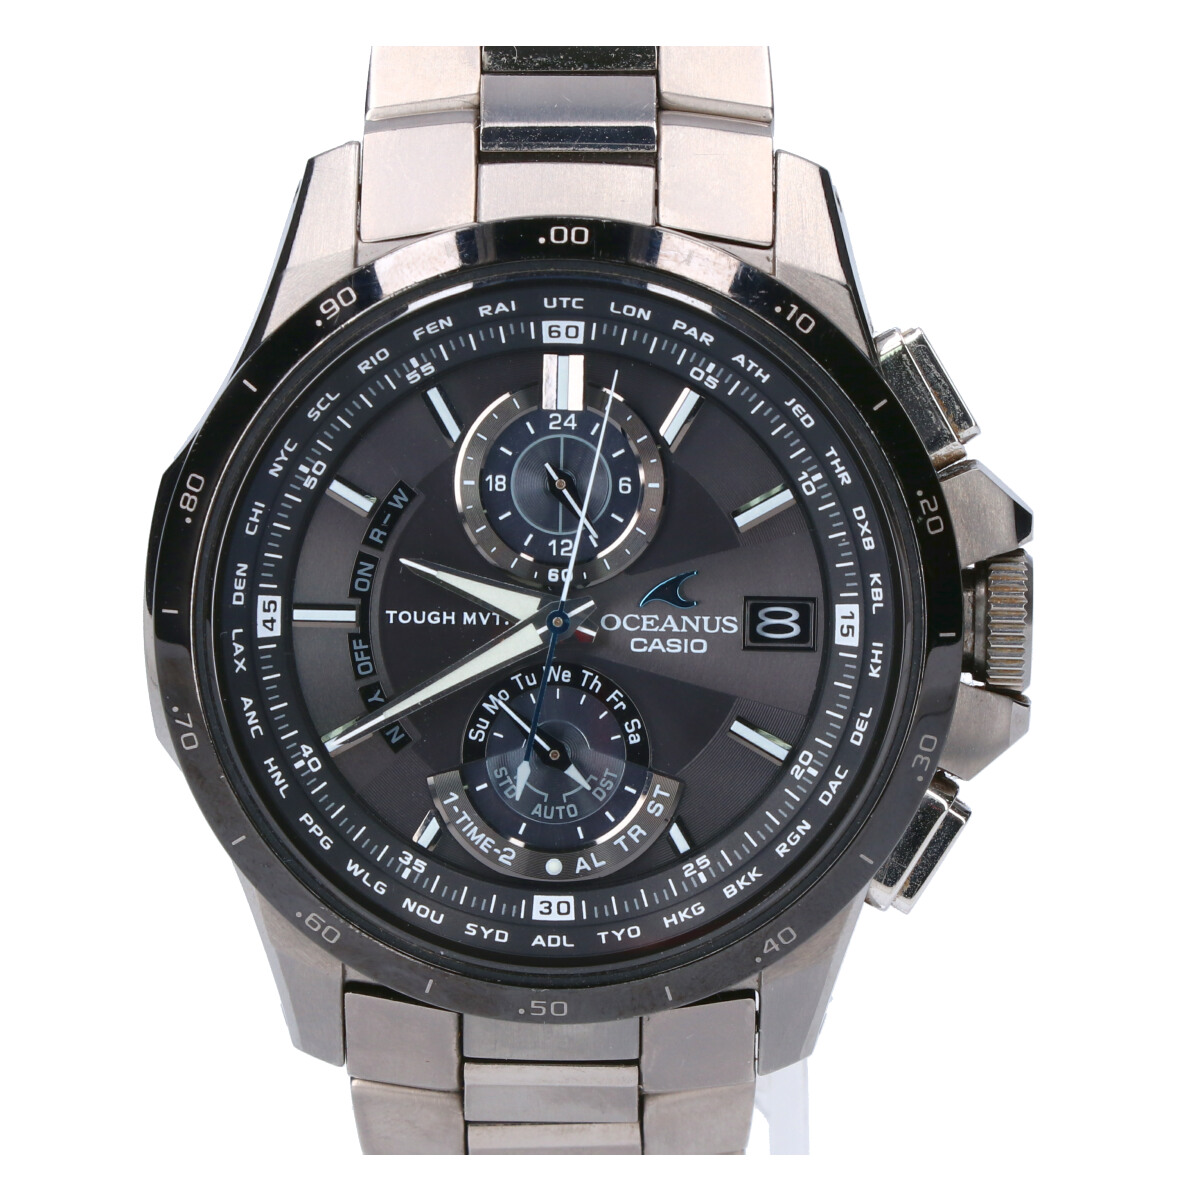 カシオのOCW-T1010-1AJF オシアナス チタン タフソーラー電波 腕時計の買取実績です。